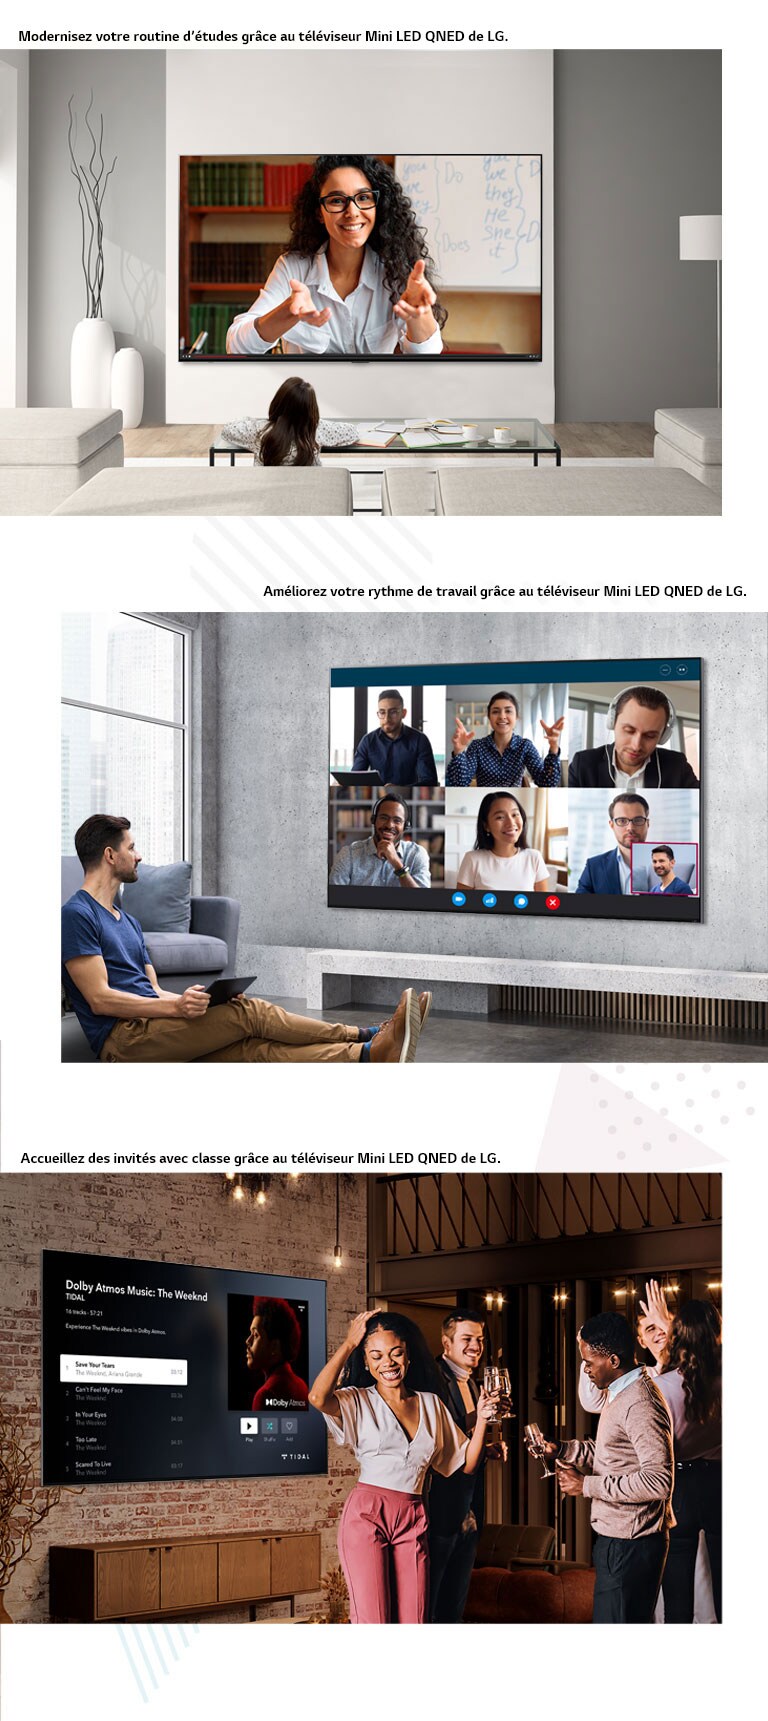 Trois images du téléviseur Mini LED QNED de LG dans différentes situations. De haut en bas : une sessions d’études en ligne, une réunion virtuelle, une soirée à la maison.